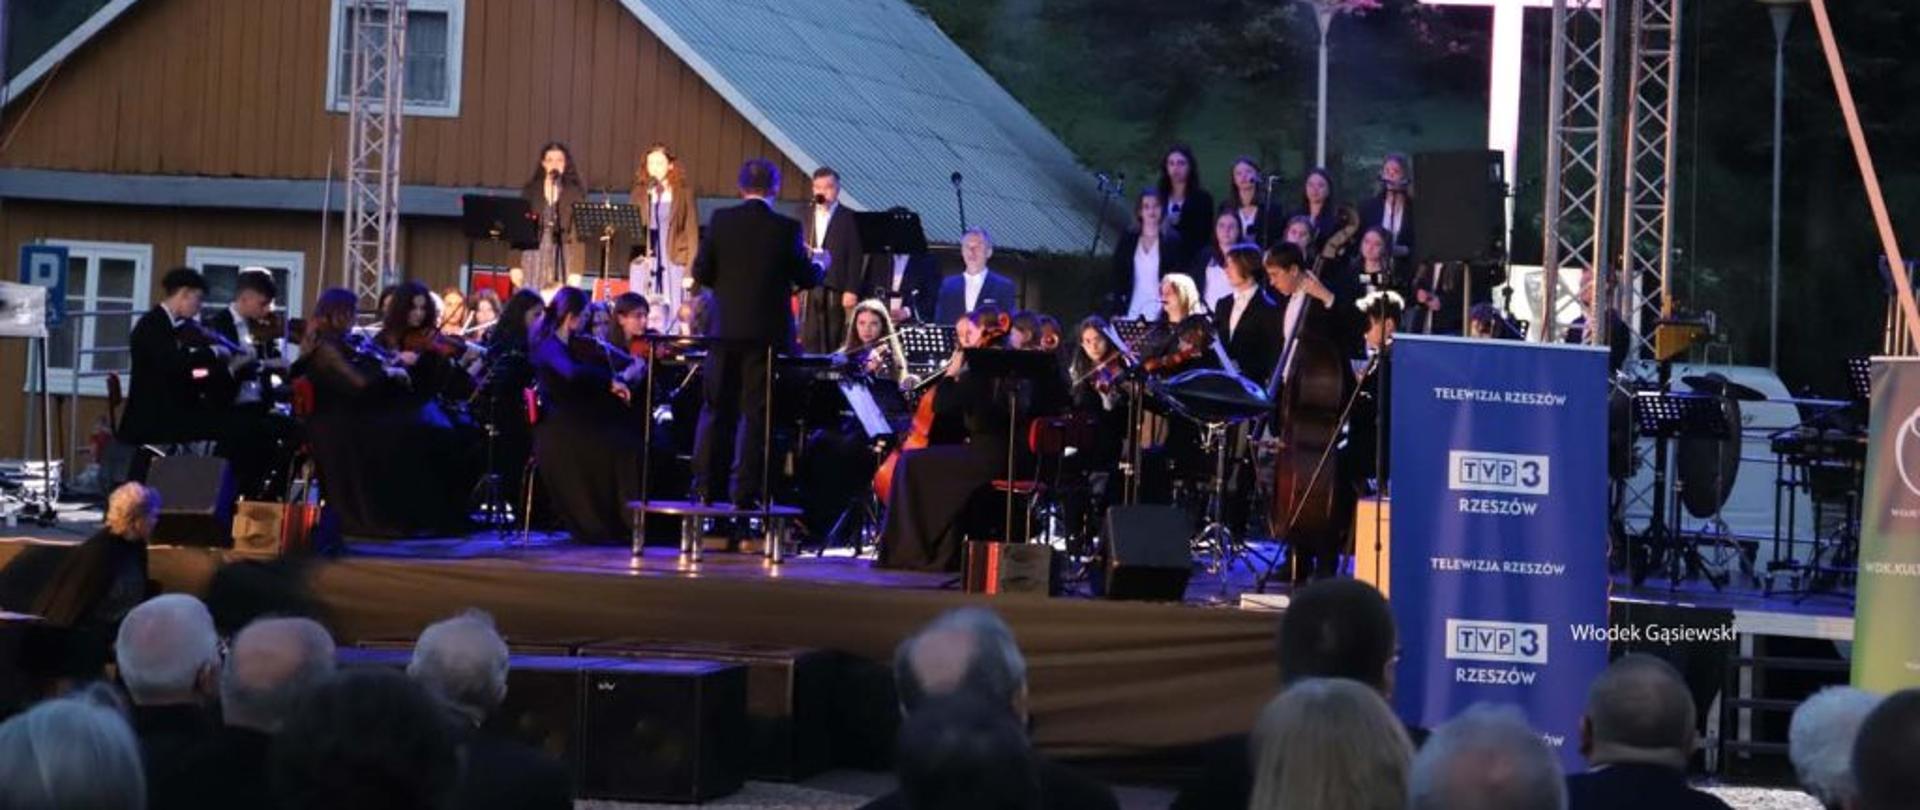 orkiestra symfoniczna naszej szkoły pod dyrekcją Ryszarda Kuska na scenie polowej w Wielopolu Skrzyńskim